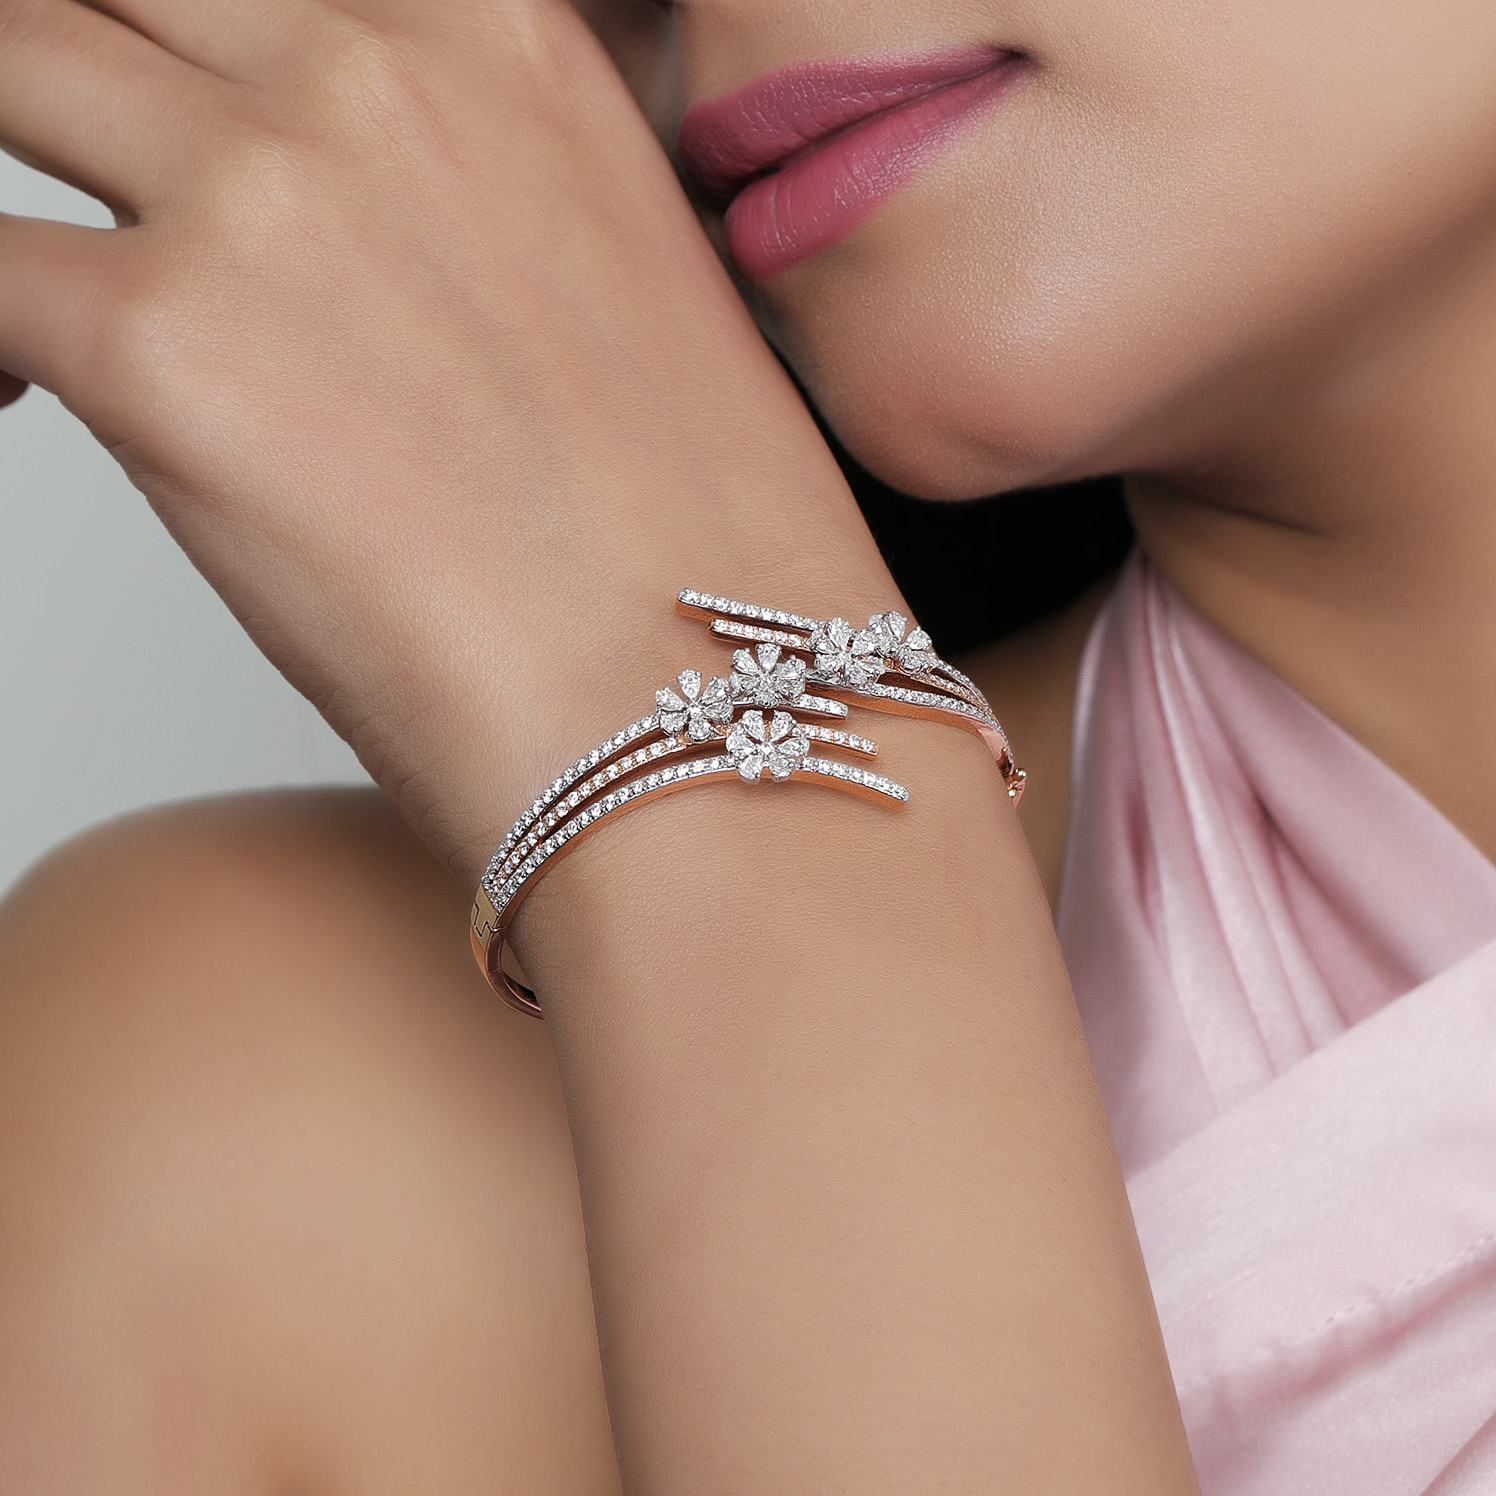 Openable American Diamond kanda bangle | Indian Designs Stylish CZ AD